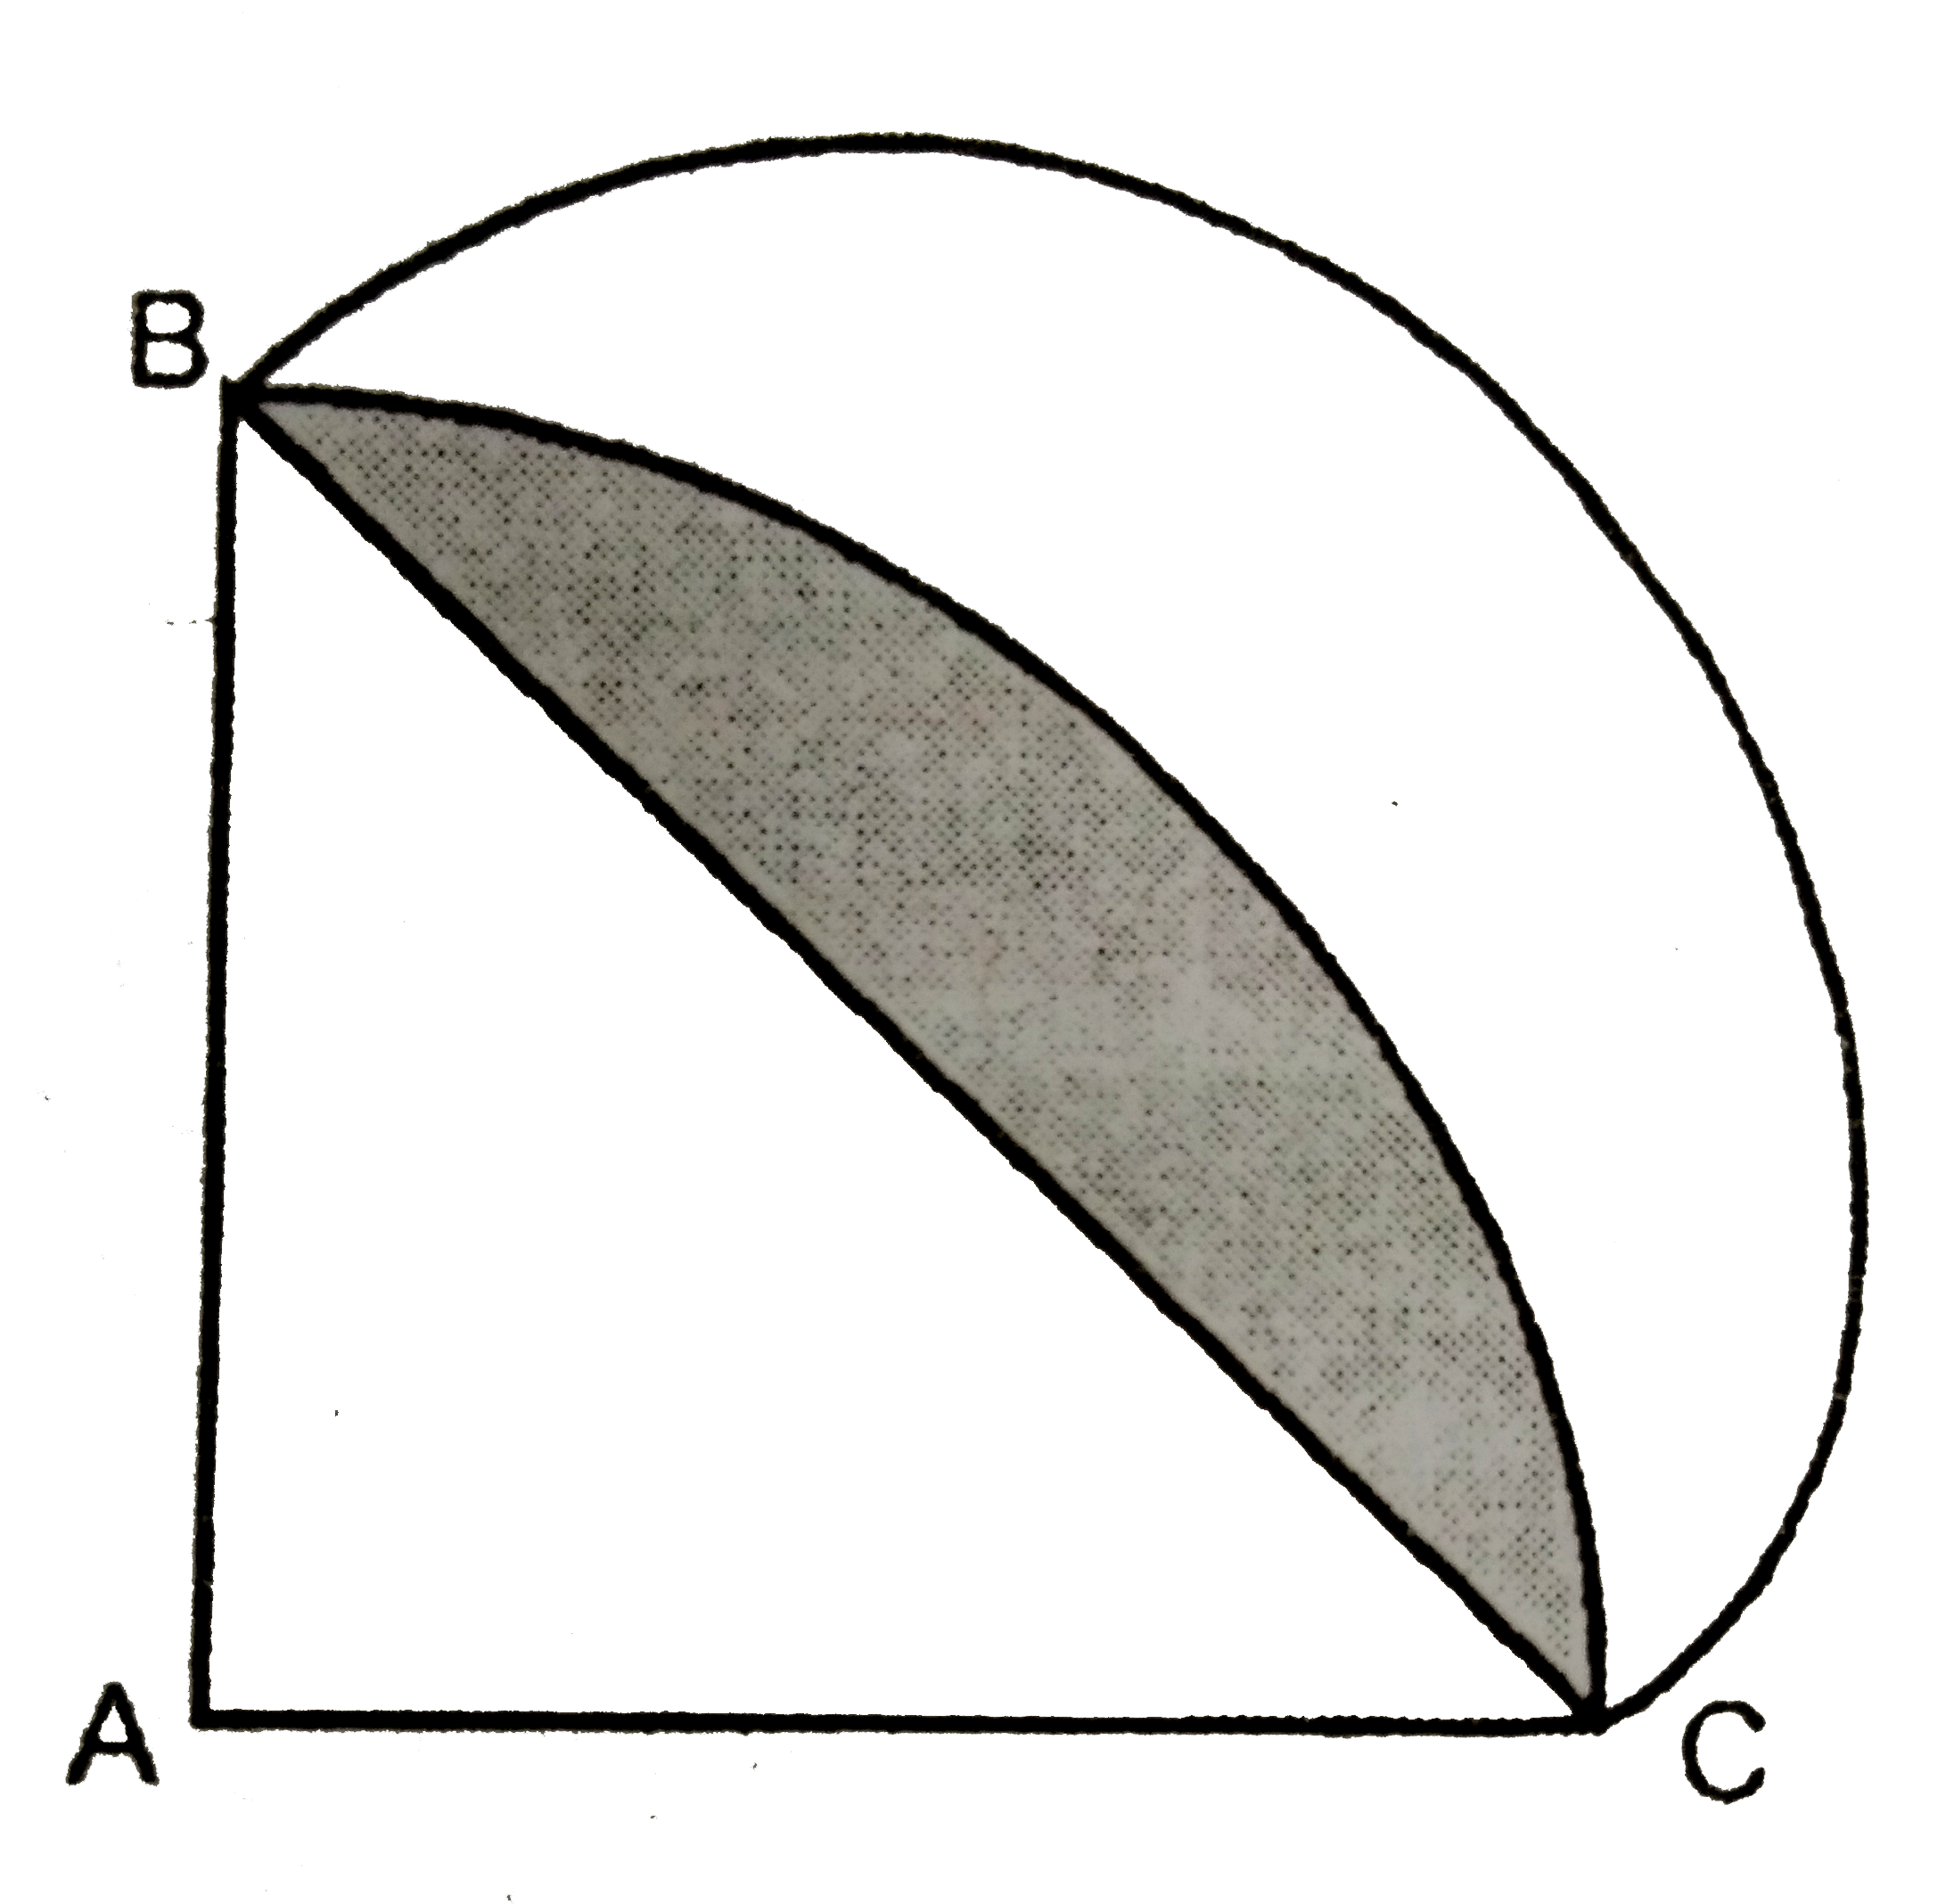 चित्र  में ABC , 14 cm  त्रिज्या  वाले एक वृत्त का चतुर्थांश है तथा BC  को  व्यास मानकर एक अर्द्धवृत खींचा गया है | छायांकित  भाग  का क्षेत्रफल  ज्ञात  कीजिए |